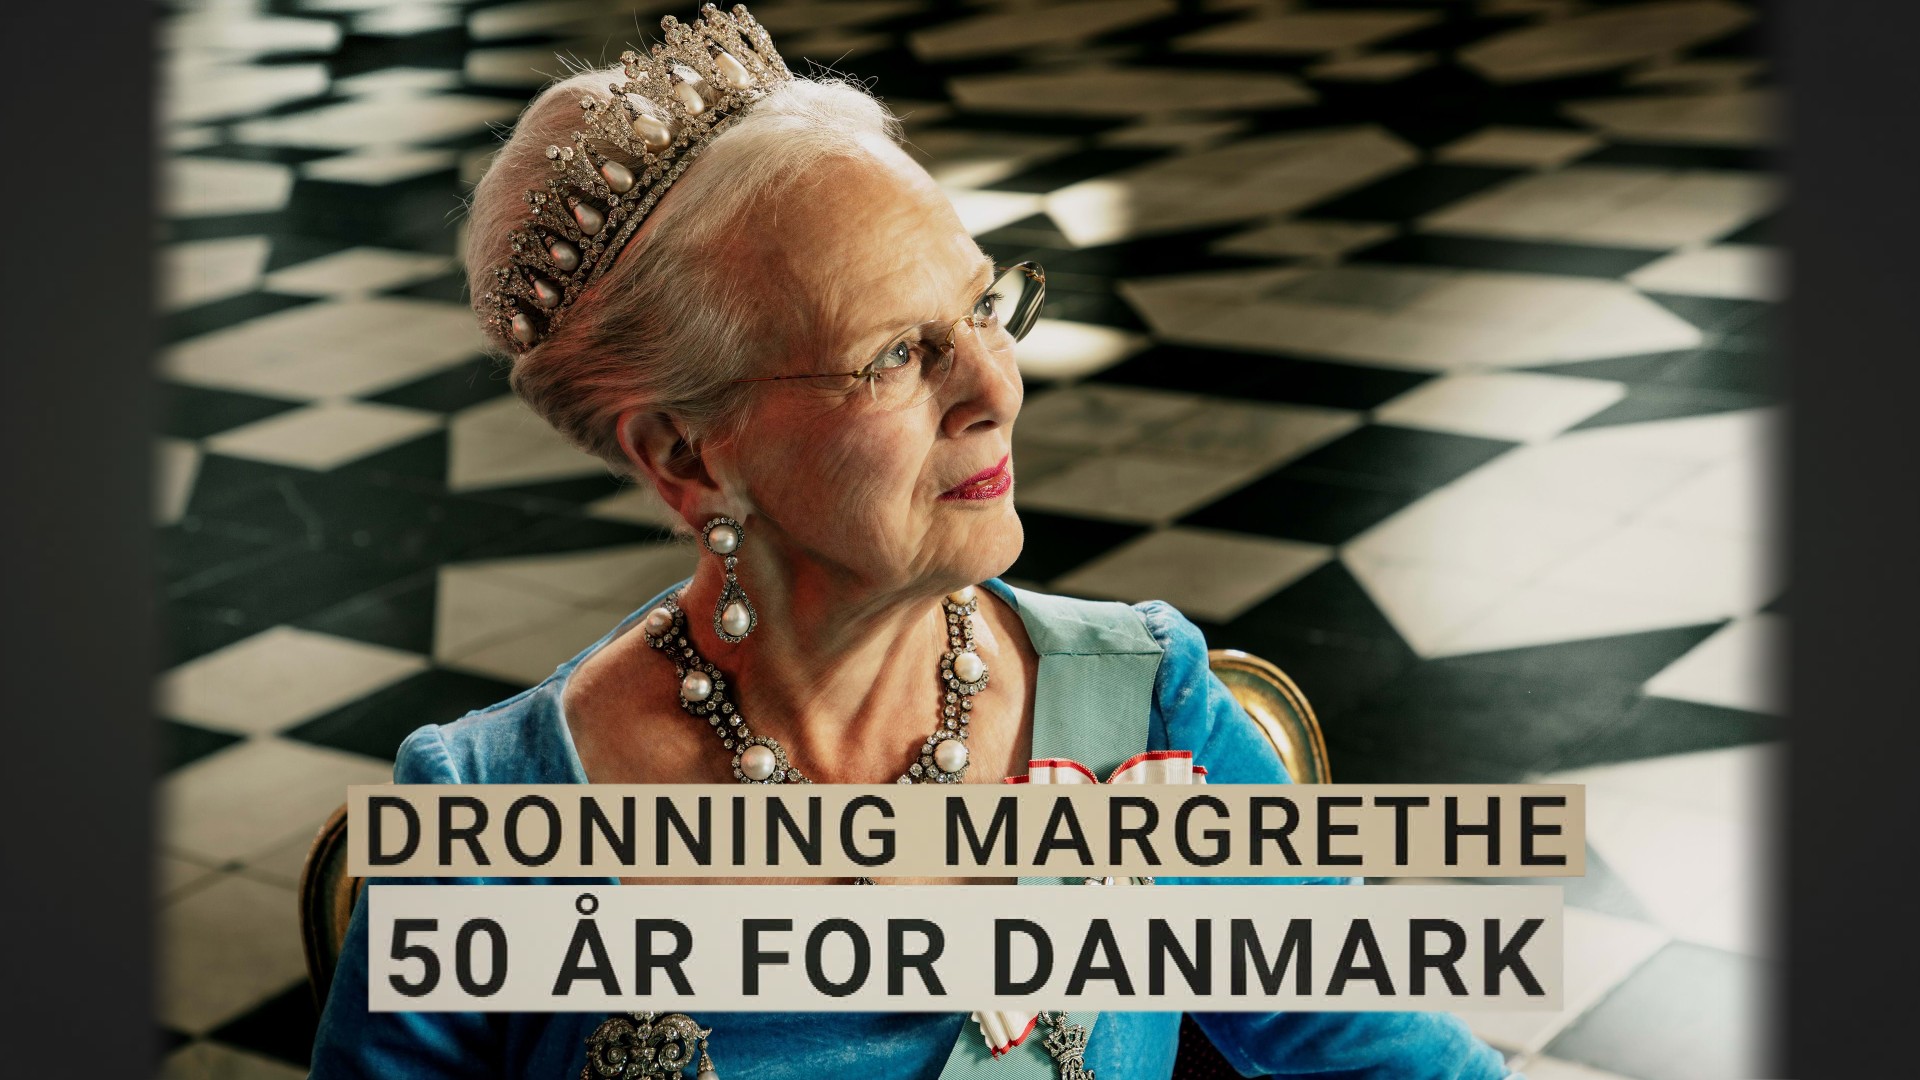 Dronning Margrethe 50 år for Danmark NRK TV